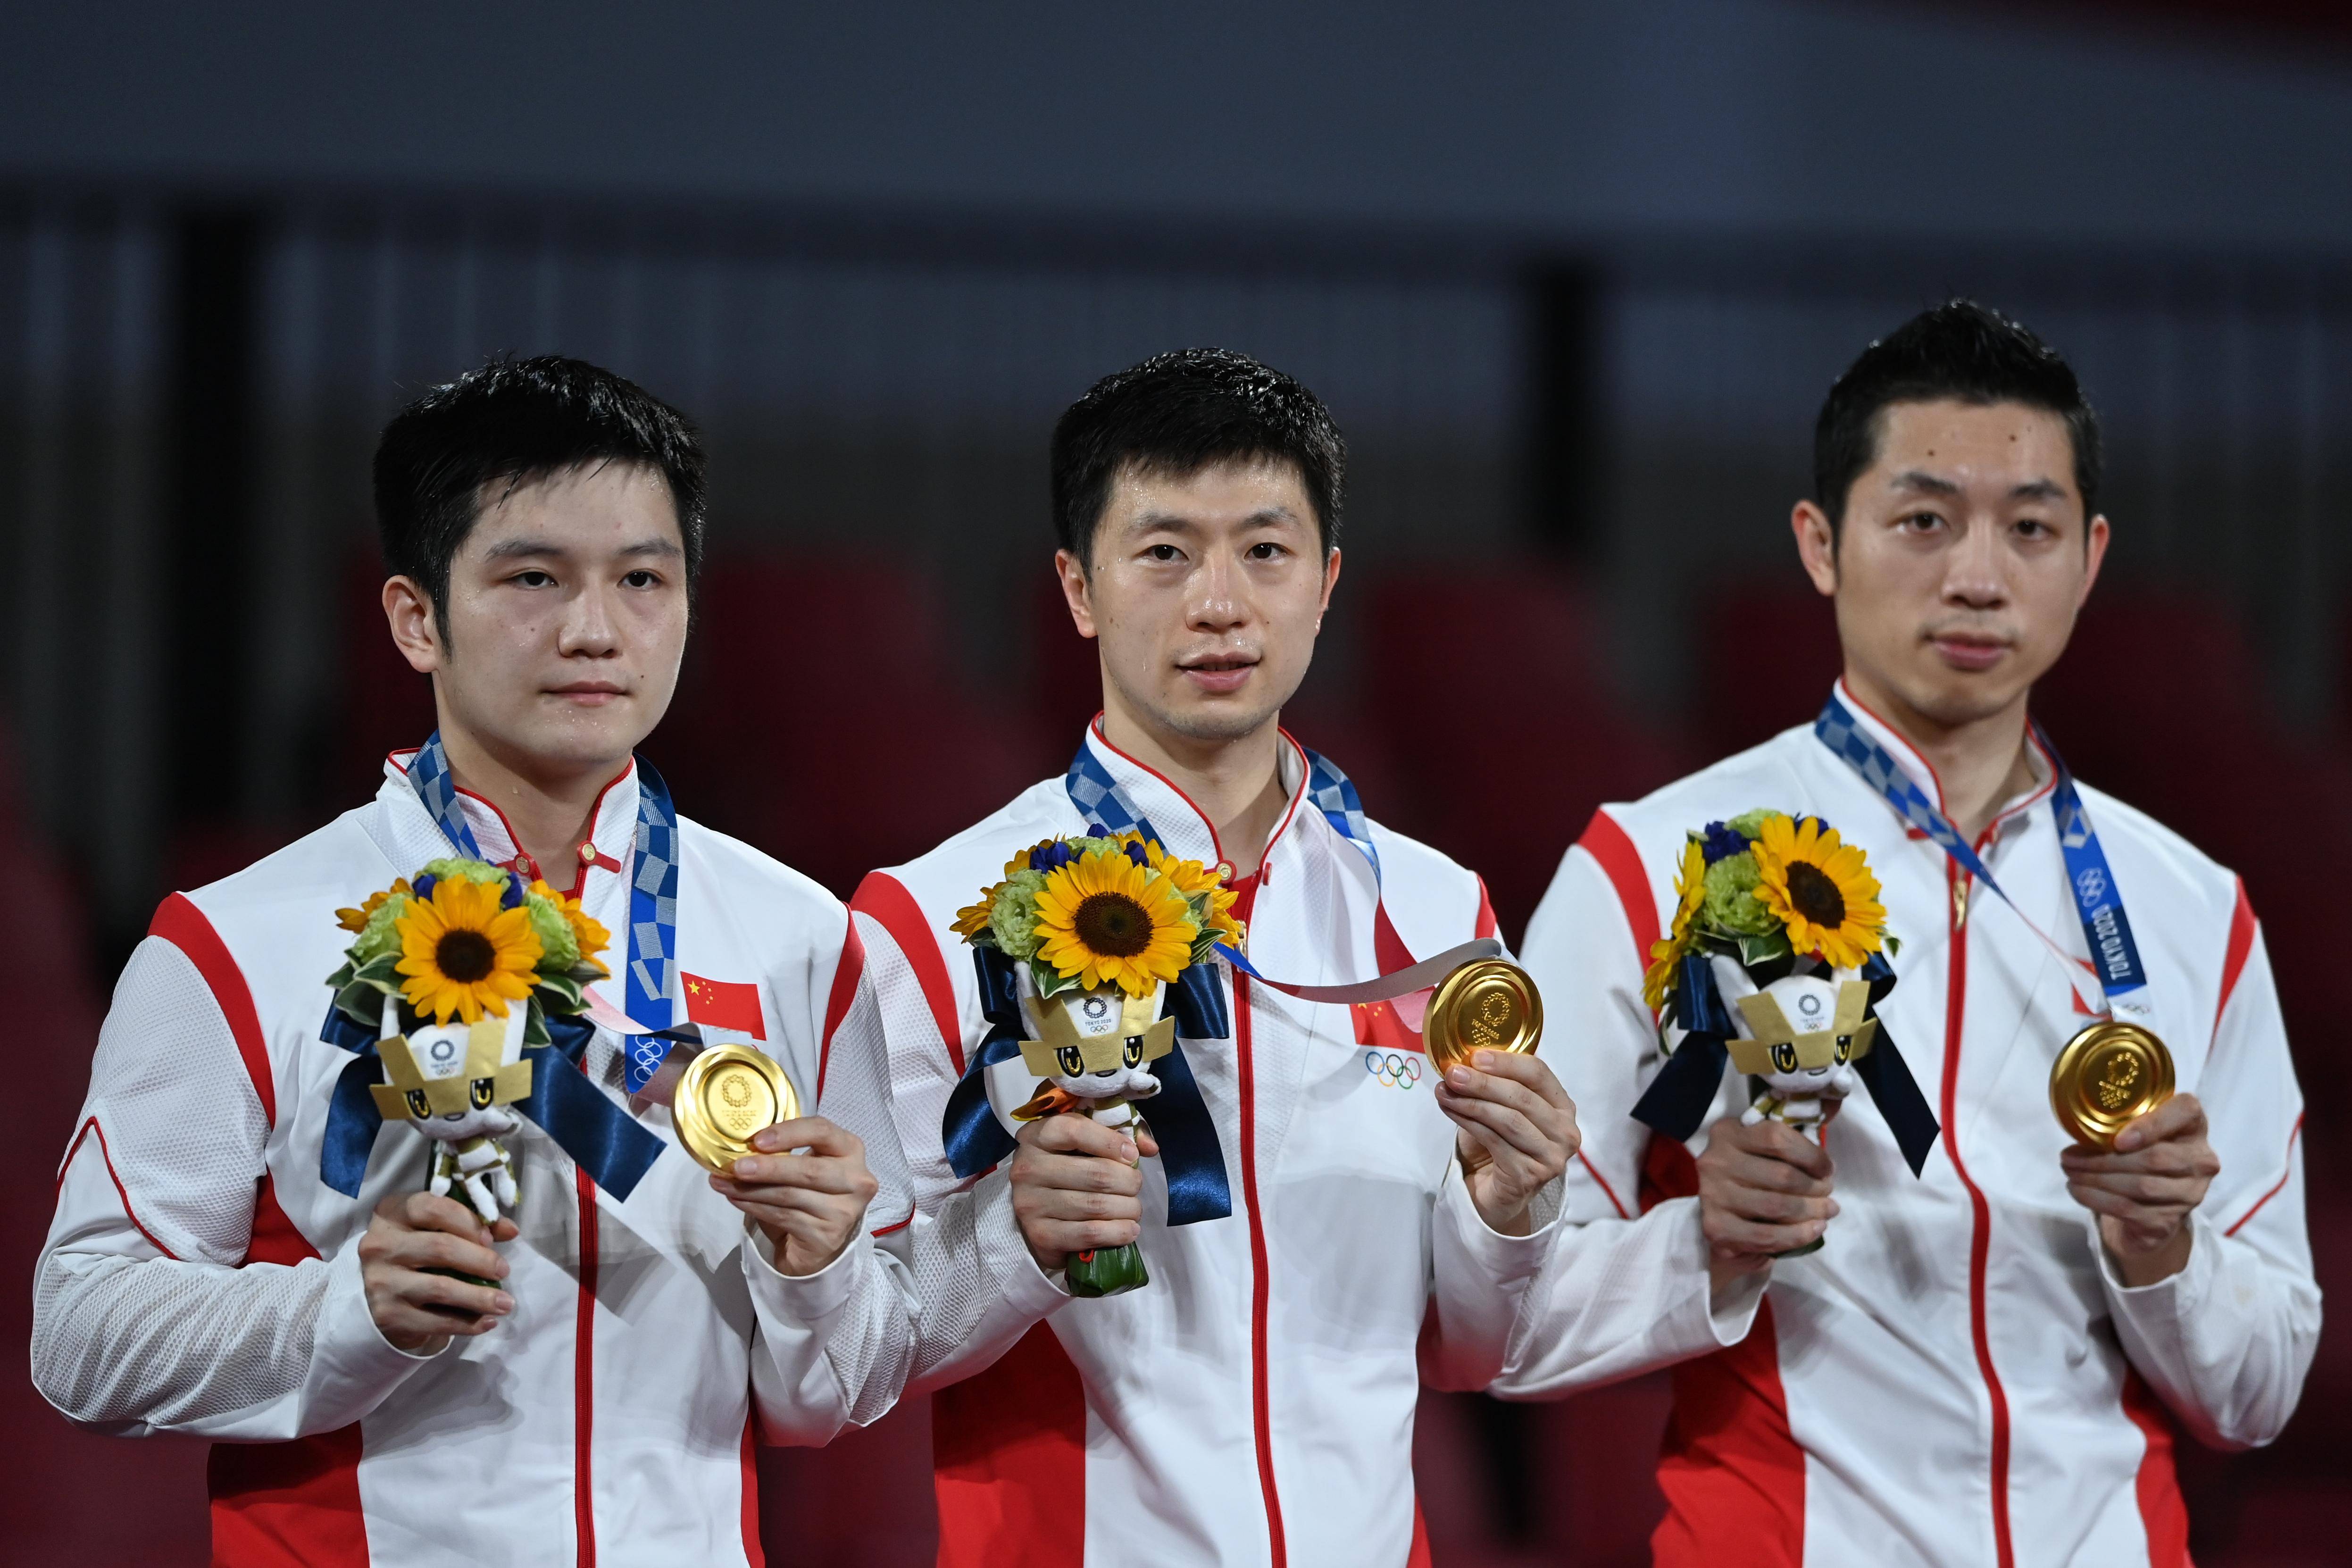 当日,在东京奥运会乒乓球男子团体决赛中,中国队以3比0的总比分战胜